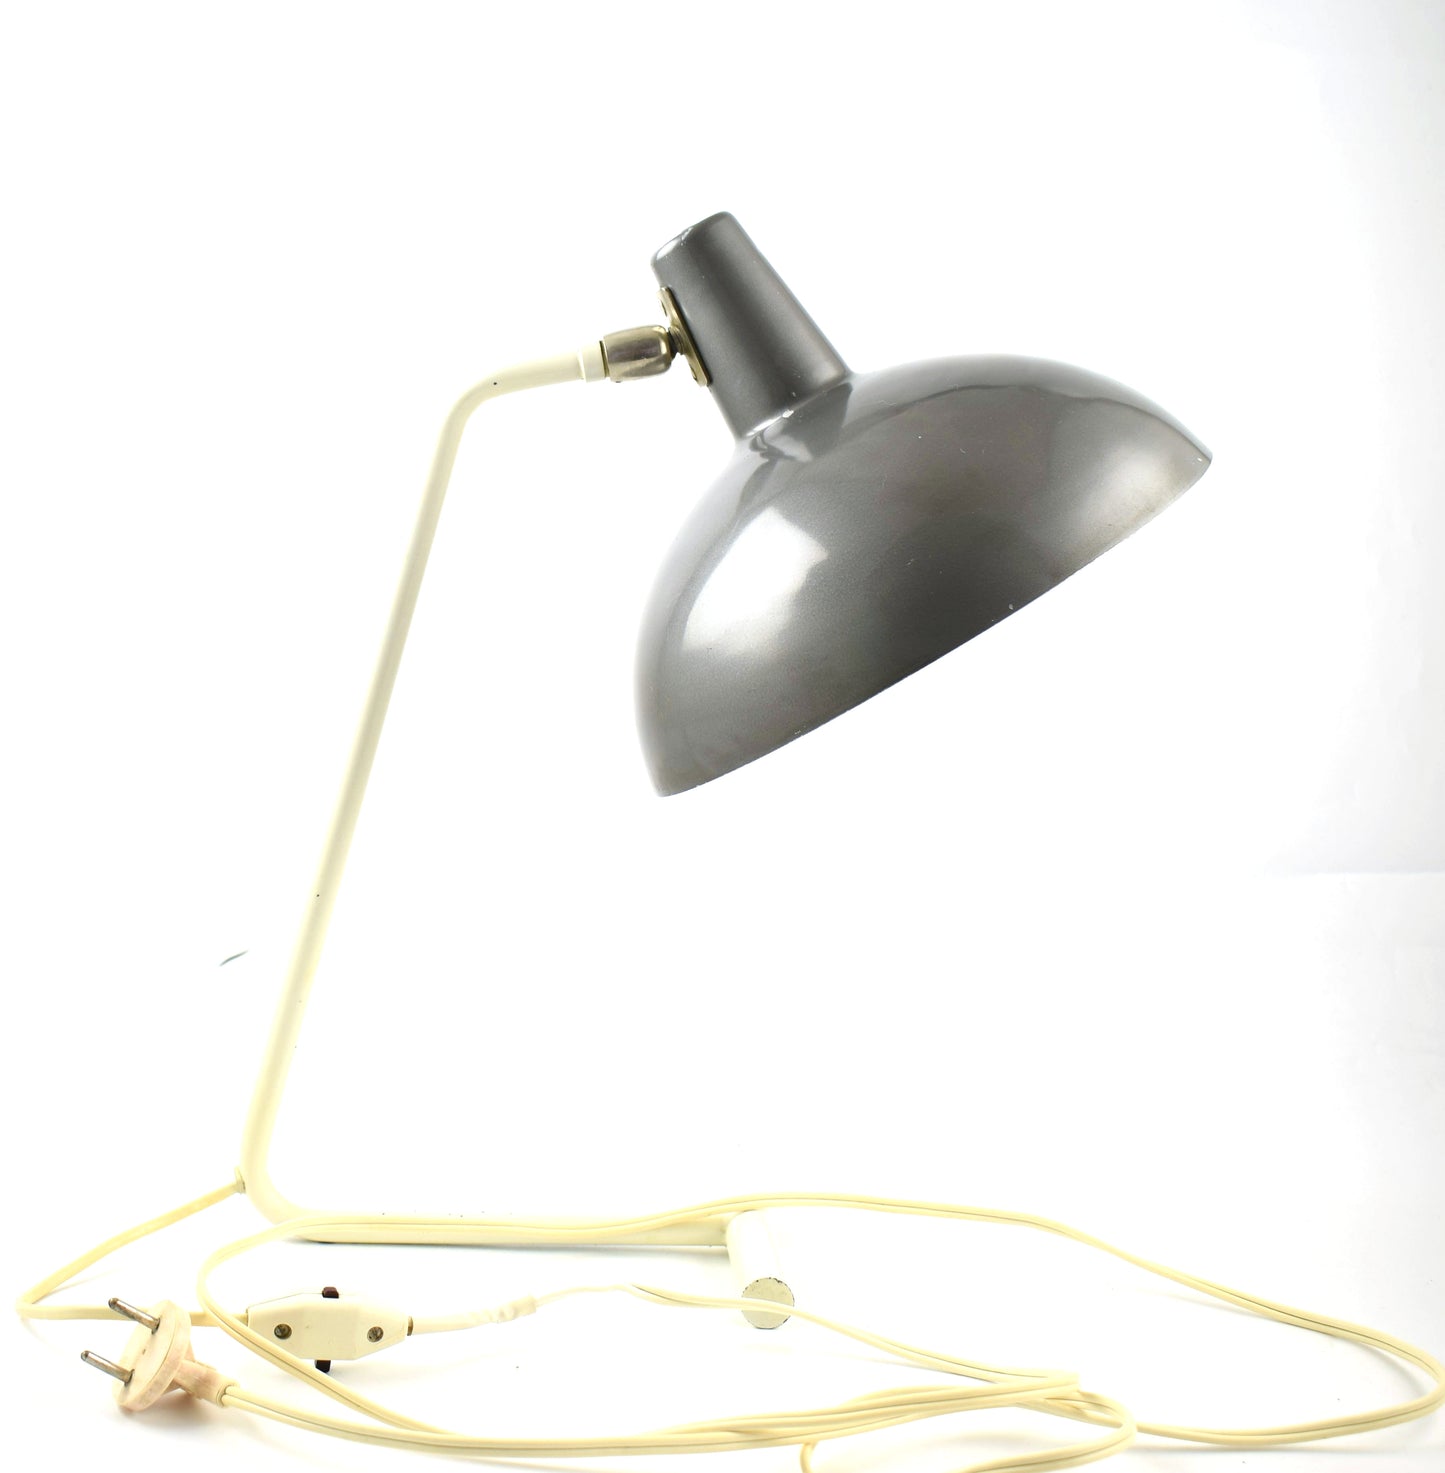 Anvia Almelo desk lamp or table lamp by J. Hoogervorst Dutch desk light